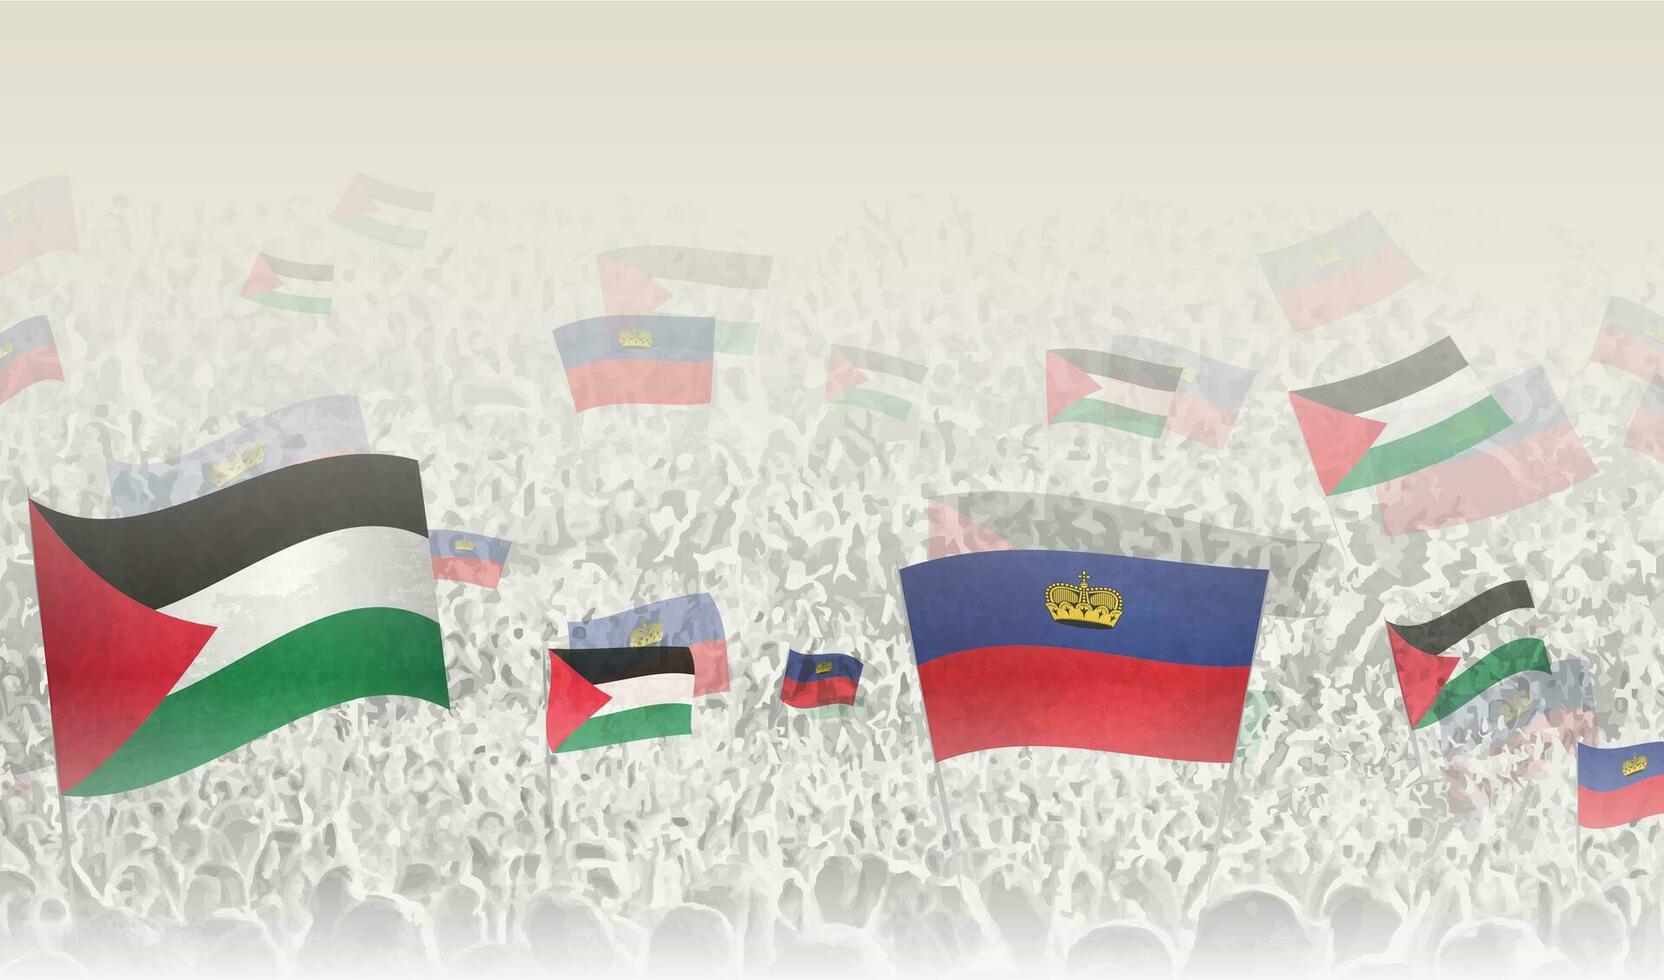 Palestine et Liechtenstein drapeaux dans une foule de applaudissement personnes. vecteur